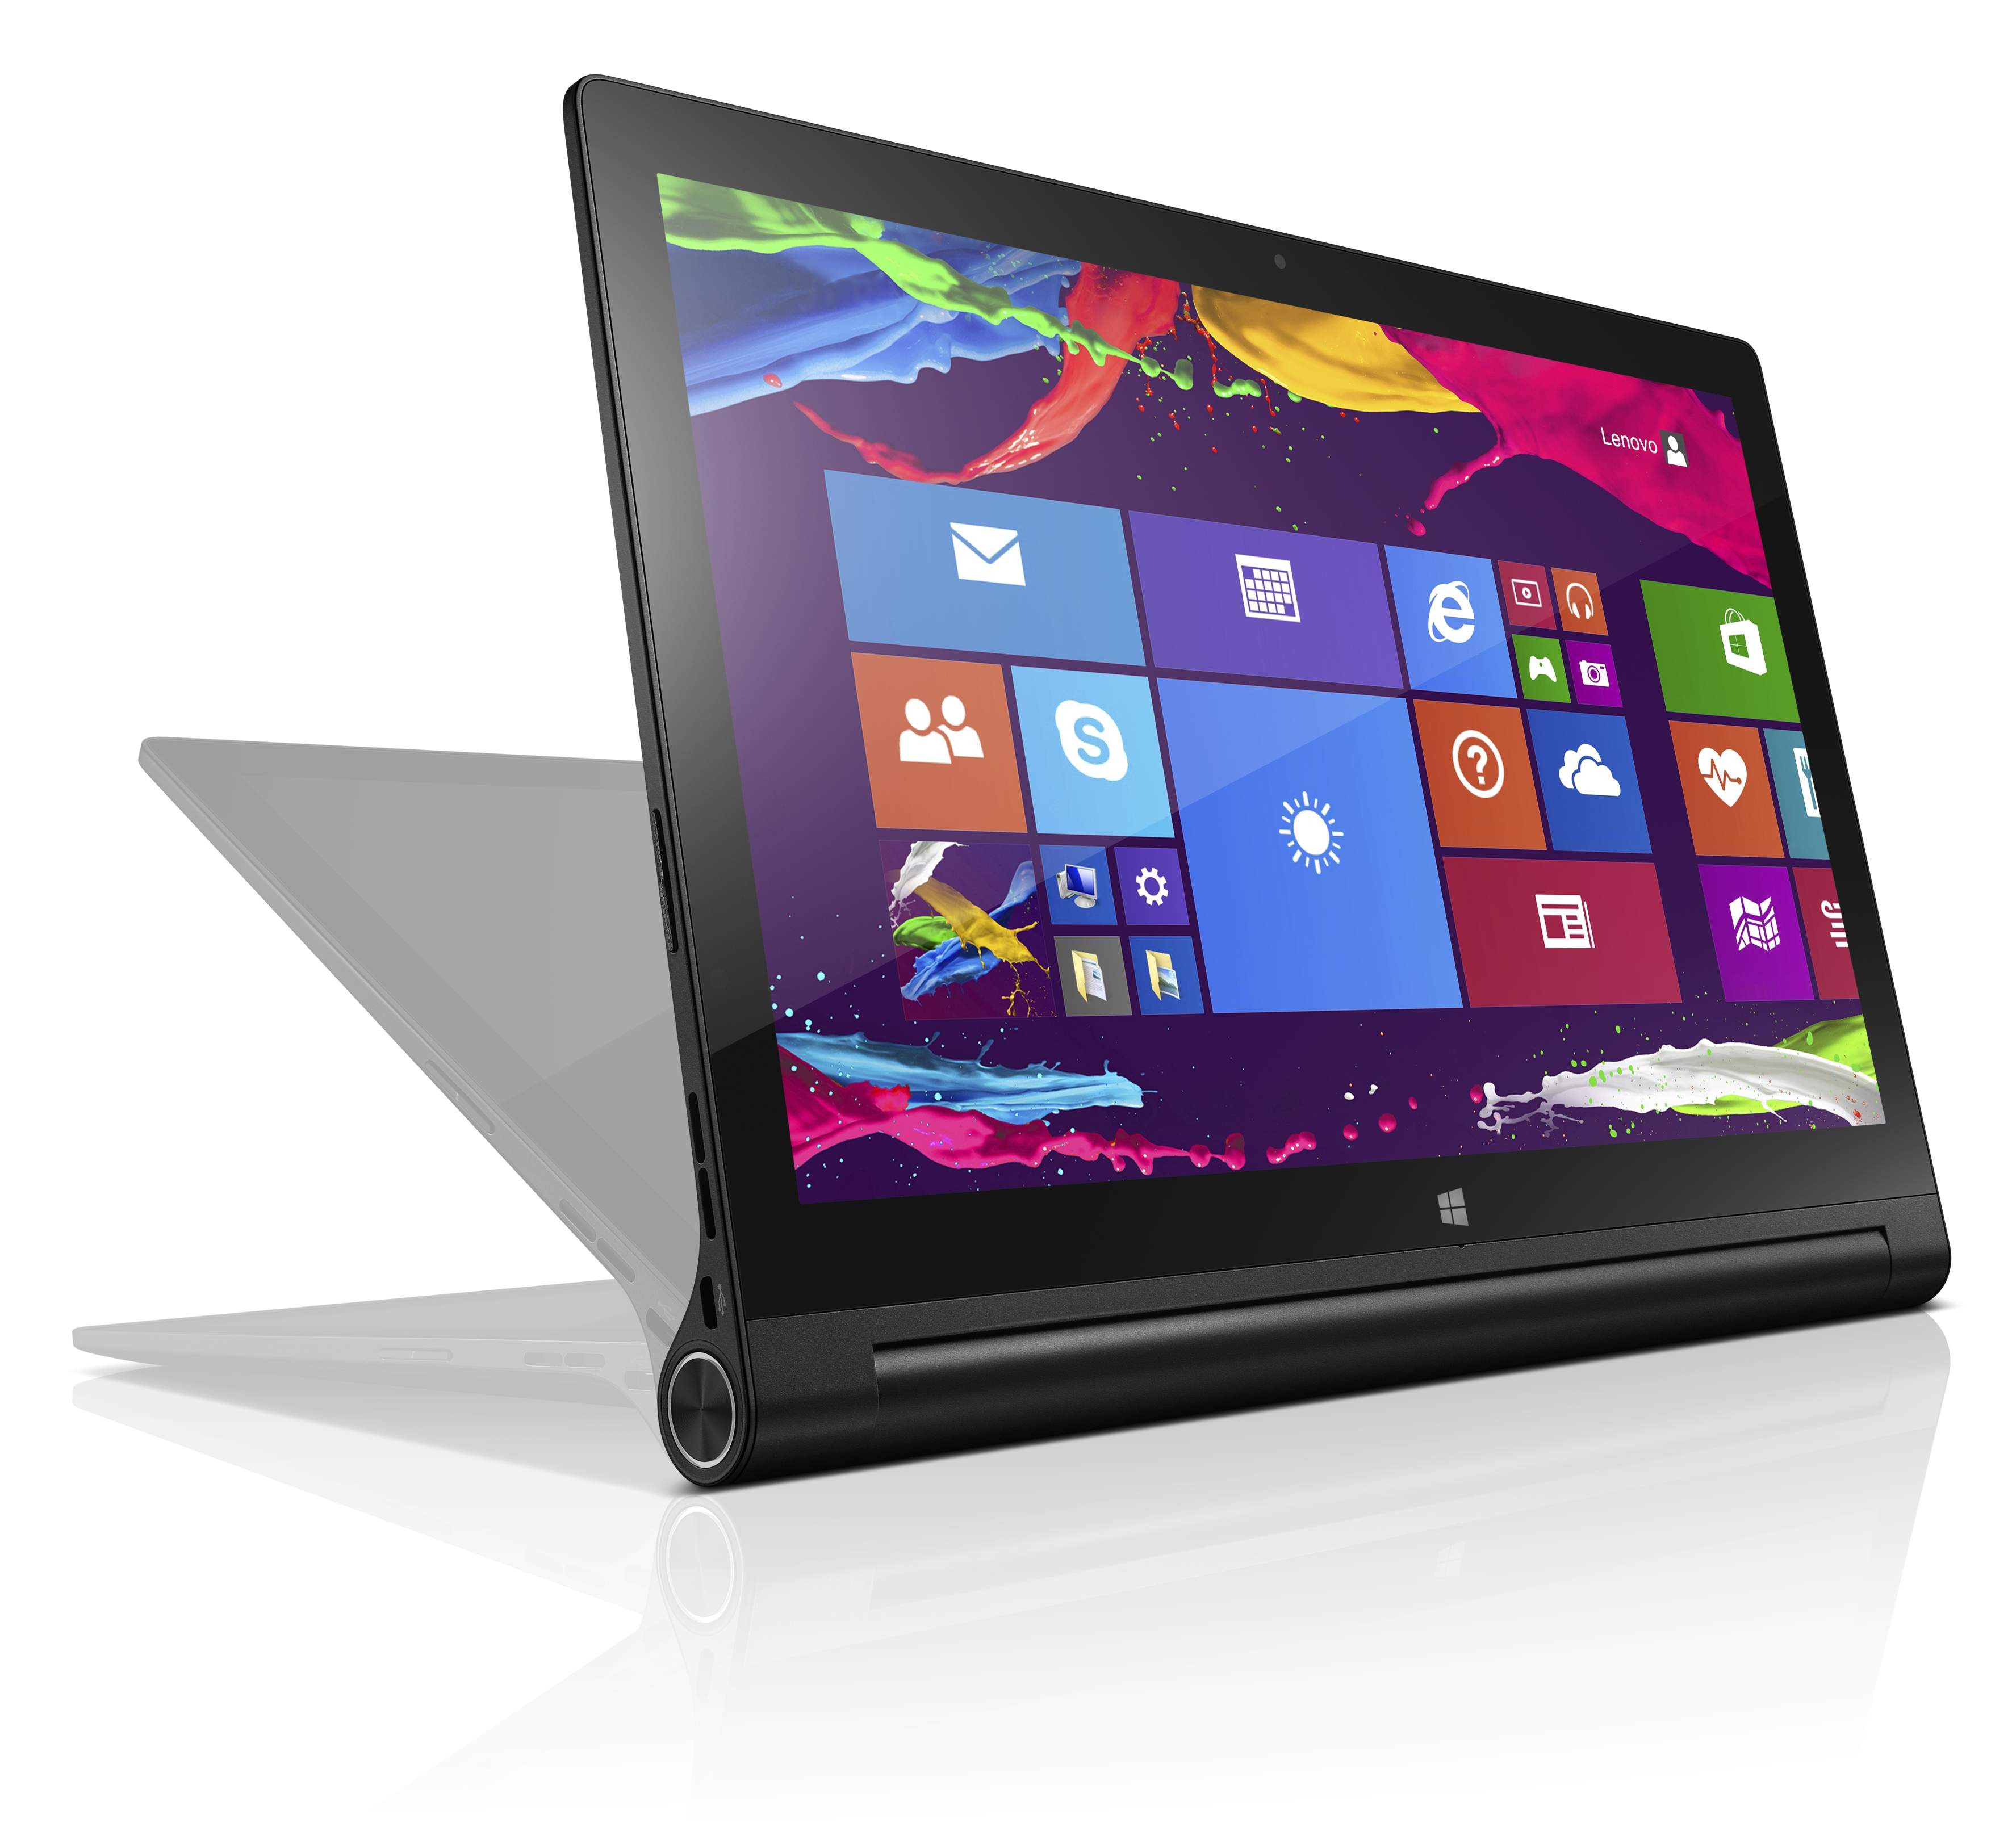 Lenovo presenta la Yoga tablet 2, una tablet para Android o Windows